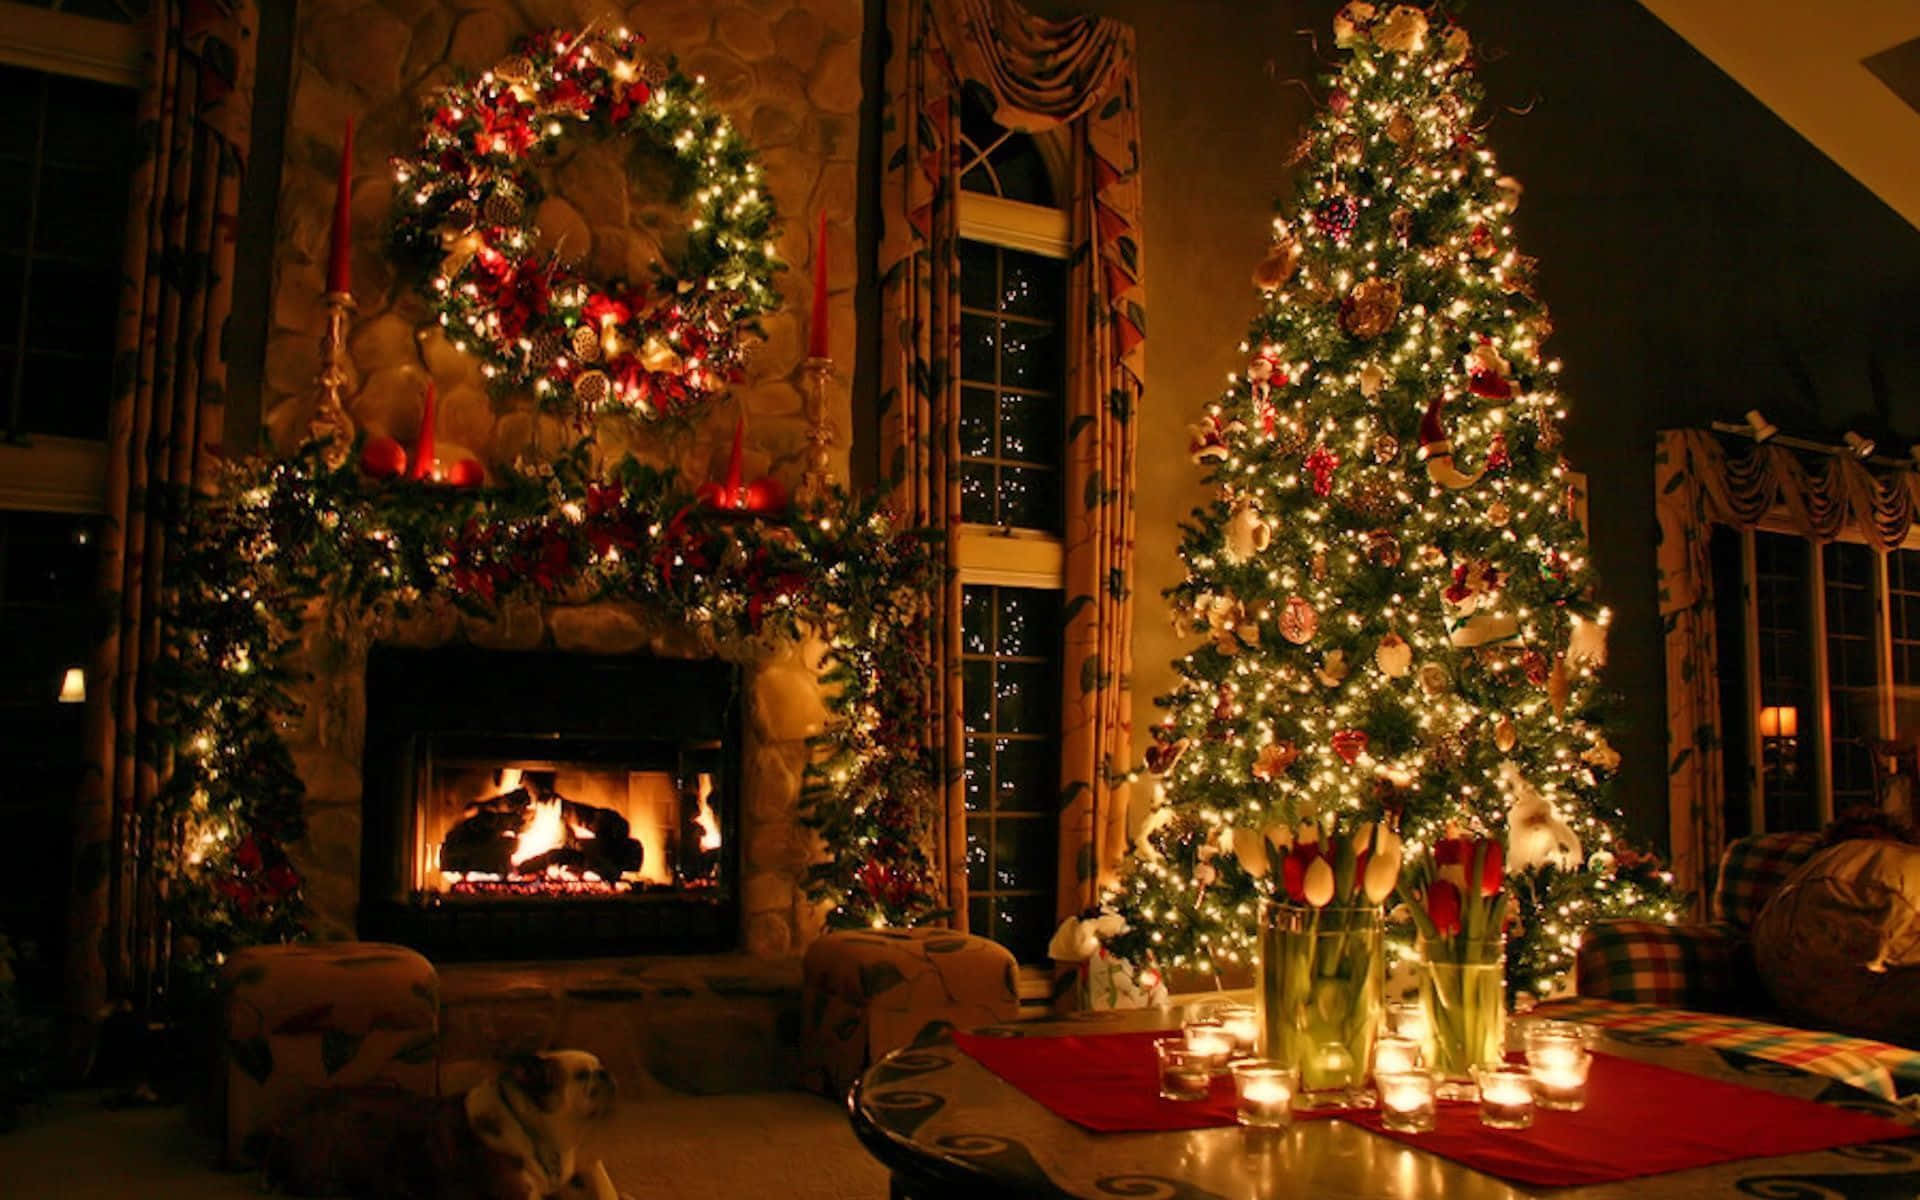 Verbringensie Die Festliche Stimmung In Ihrem Zuhause Mit Einem Wunderschönen Weihnachts-desktop. Wallpaper